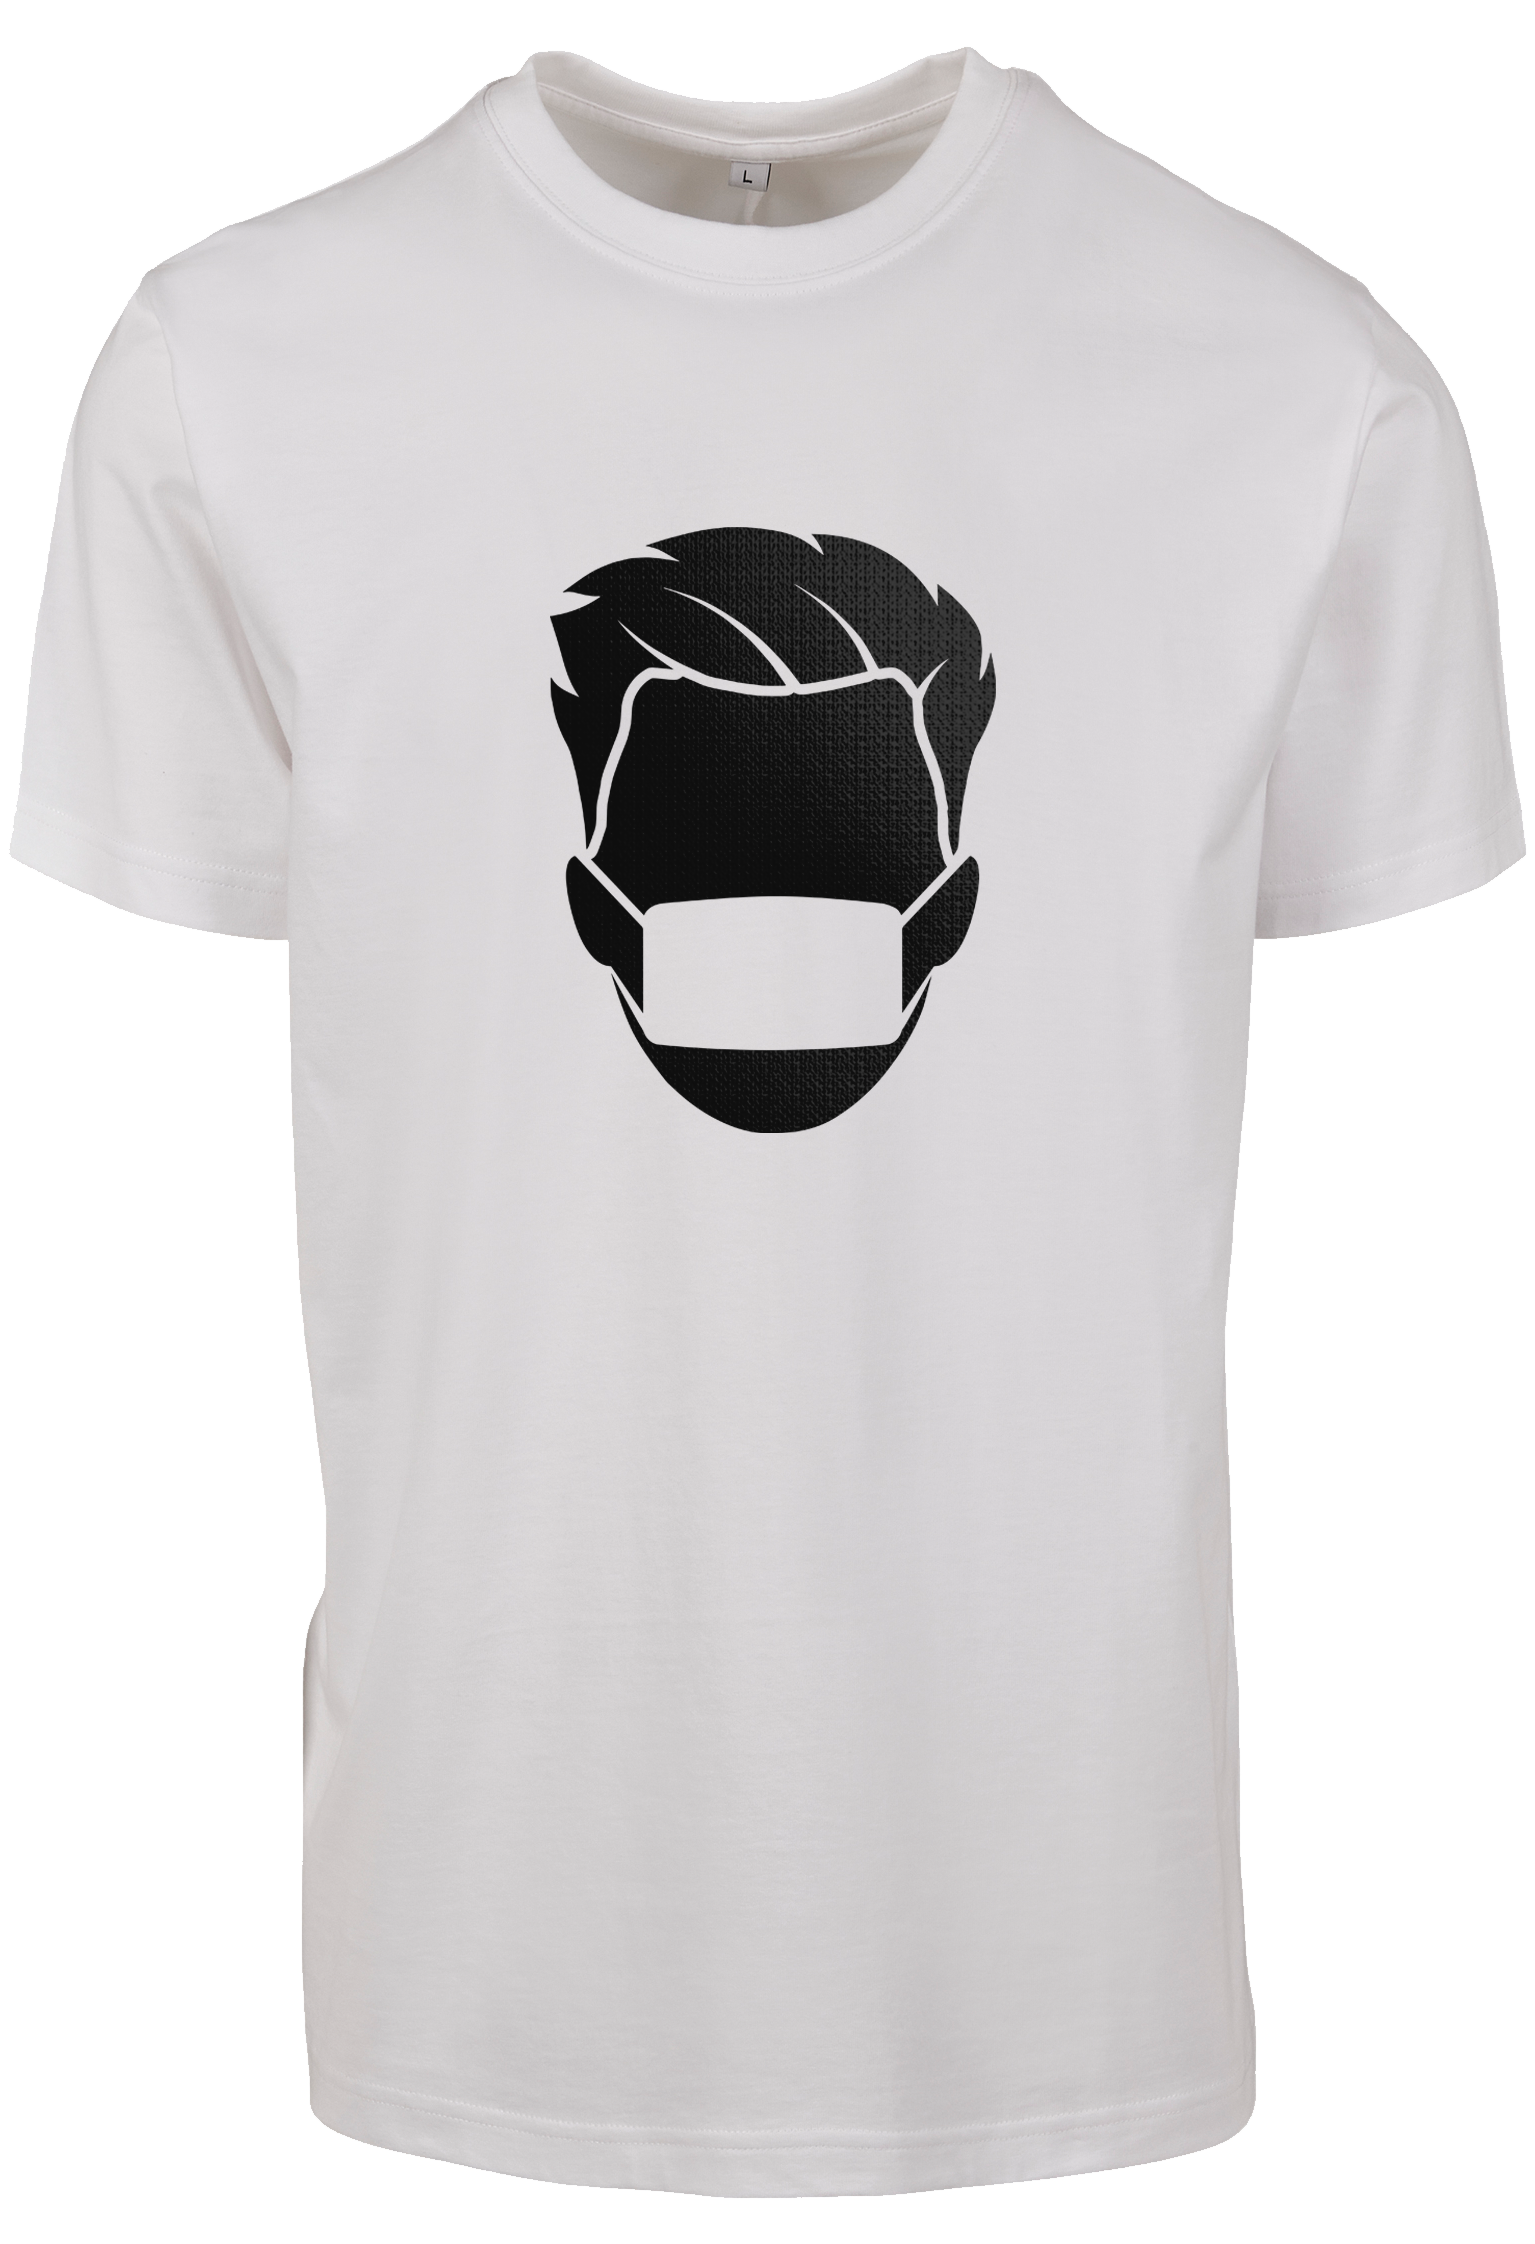 Zor white T-Shirt